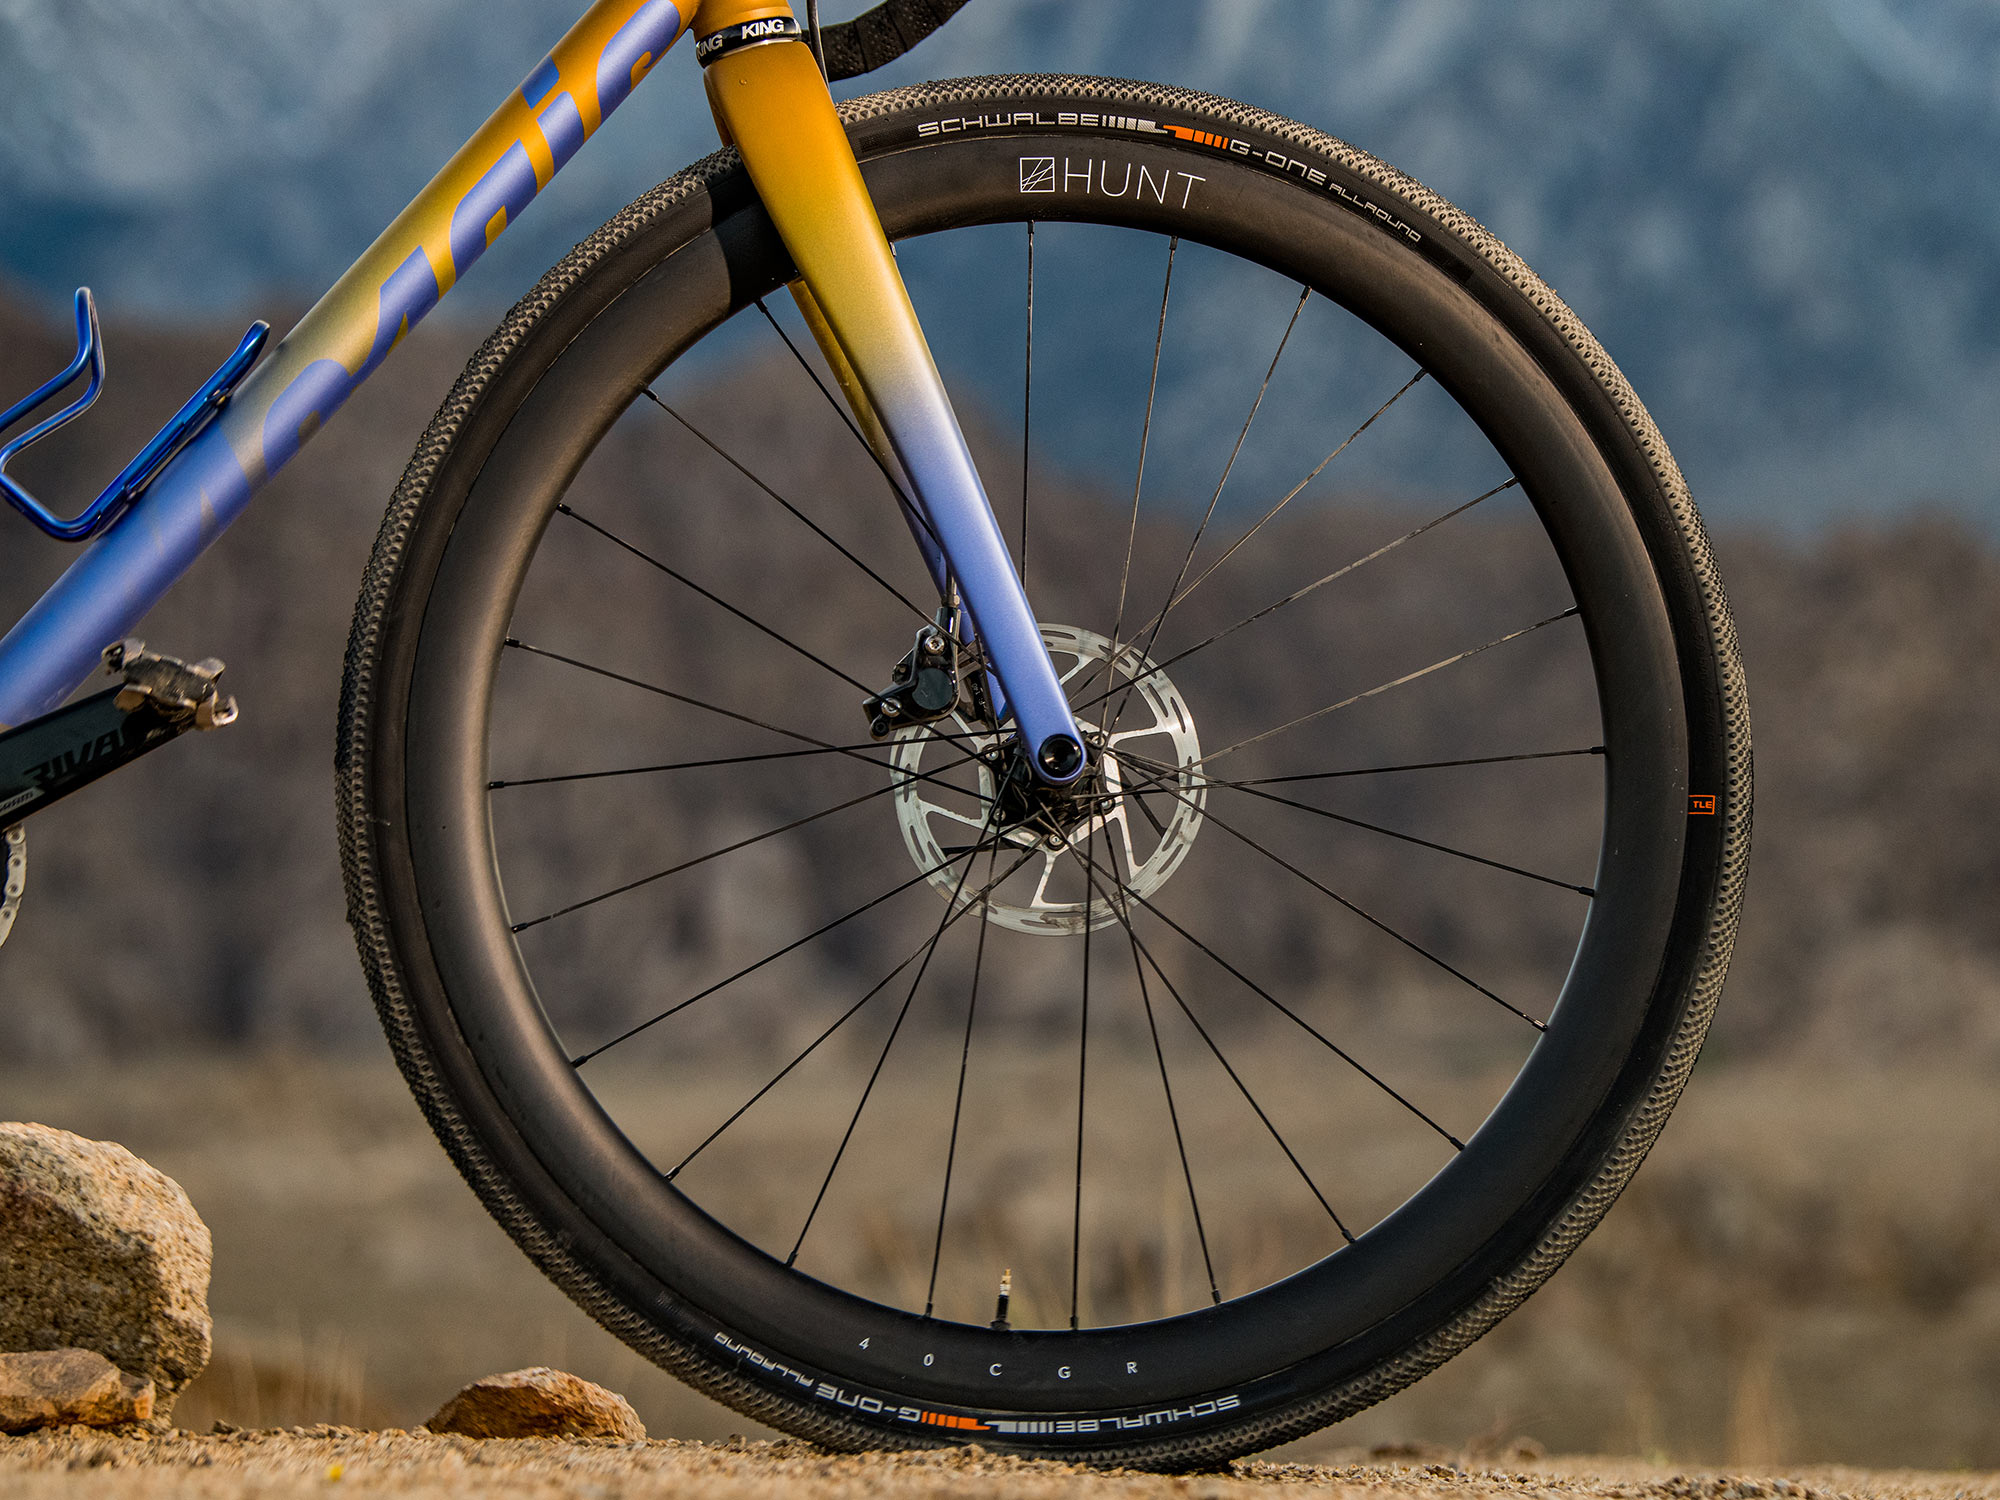 Hunt Carbon Gravel Race lightweight hookless tubeless gravel bike wheels, 25|40 CGR, 40 front